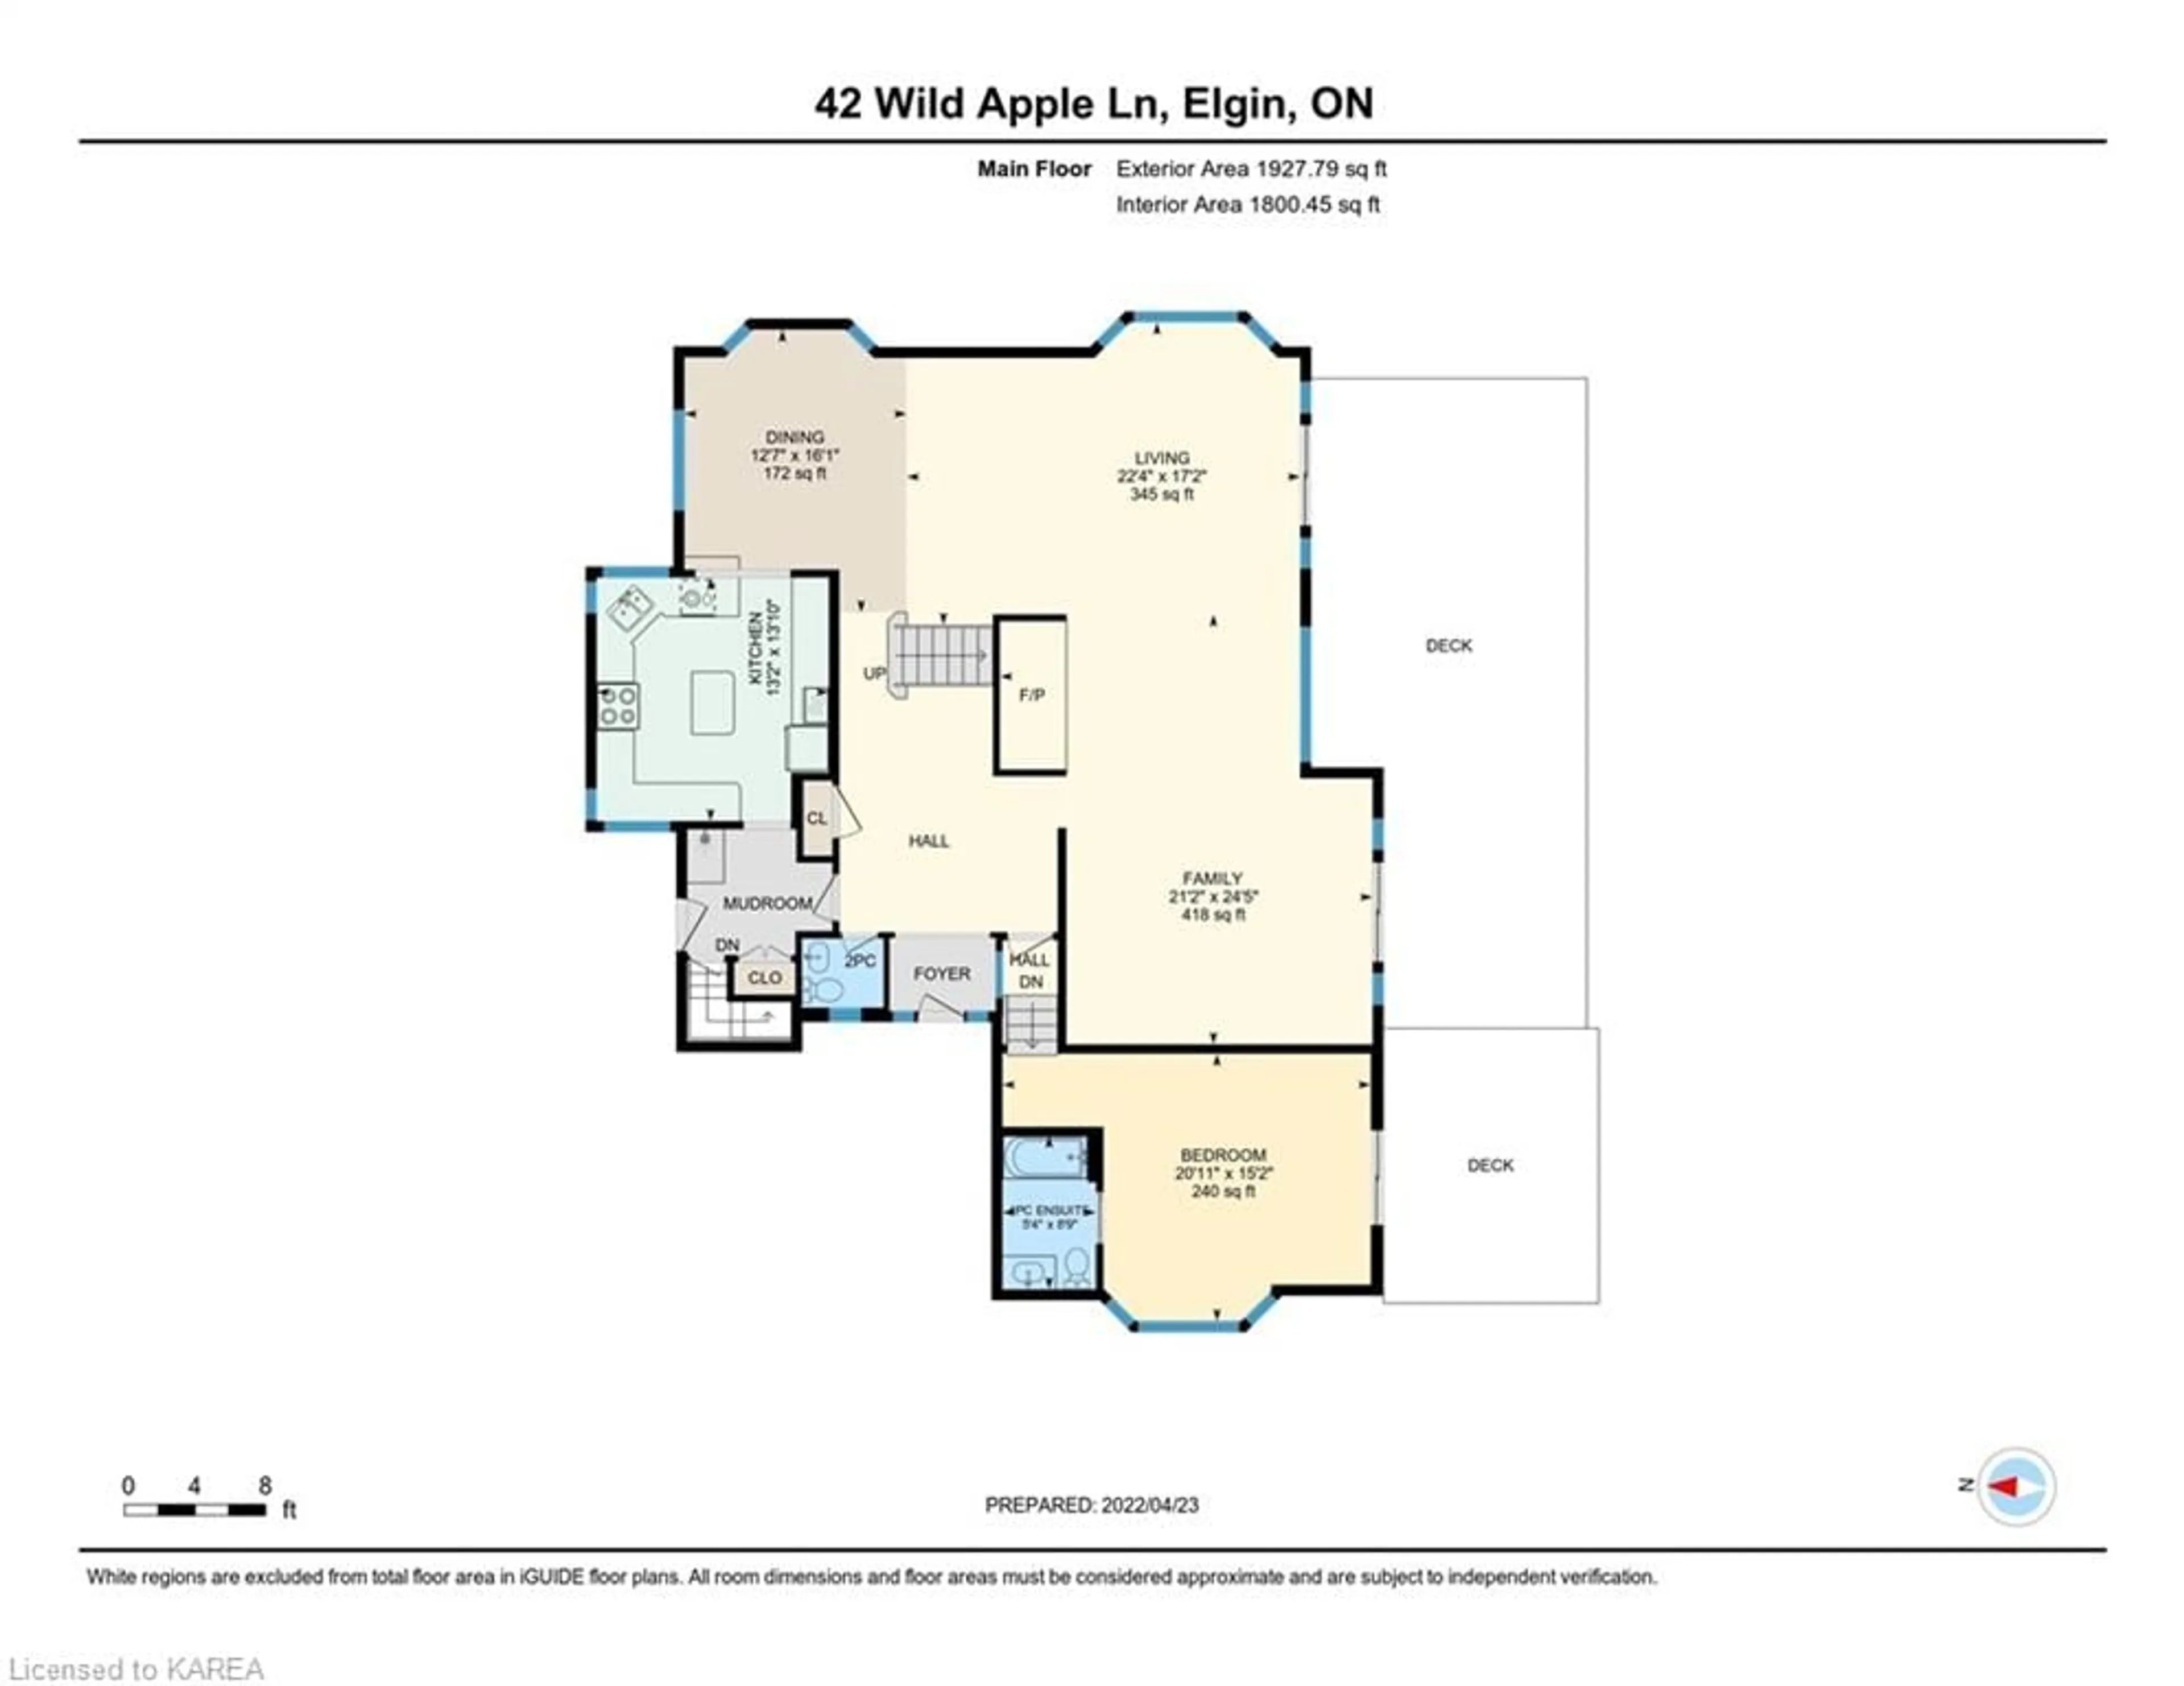 Floor plan for 42 Wild Apple Lane, Elgin Ontario K0G 1E0